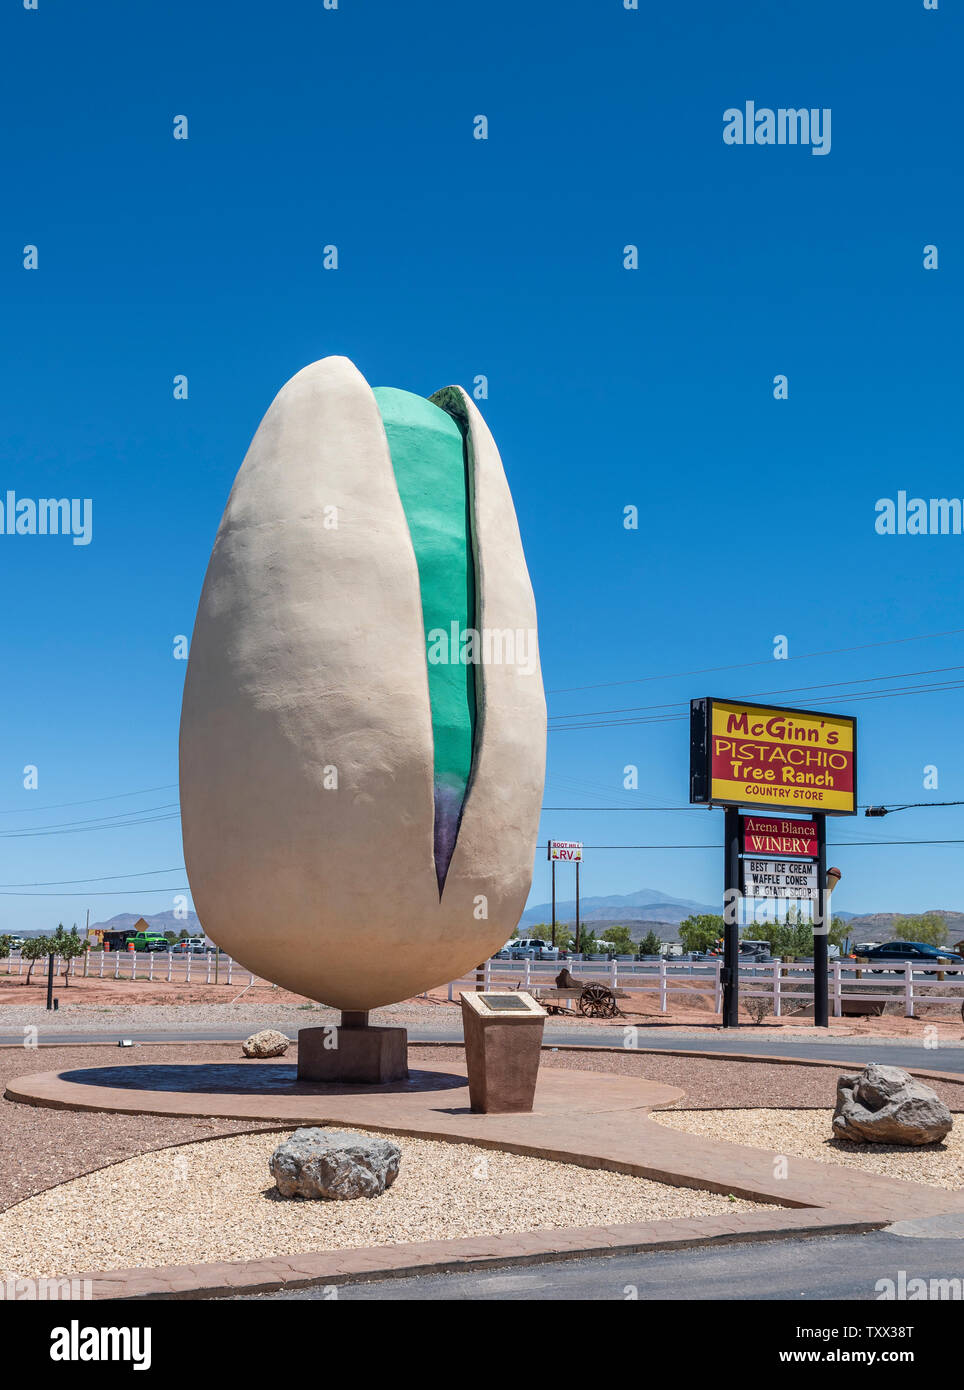 Alamogordo, Nuevo México, gigantes, pistacho, mundos más grande atracción en carretera McGinns pistacho pistacho del rancho. Foto de stock